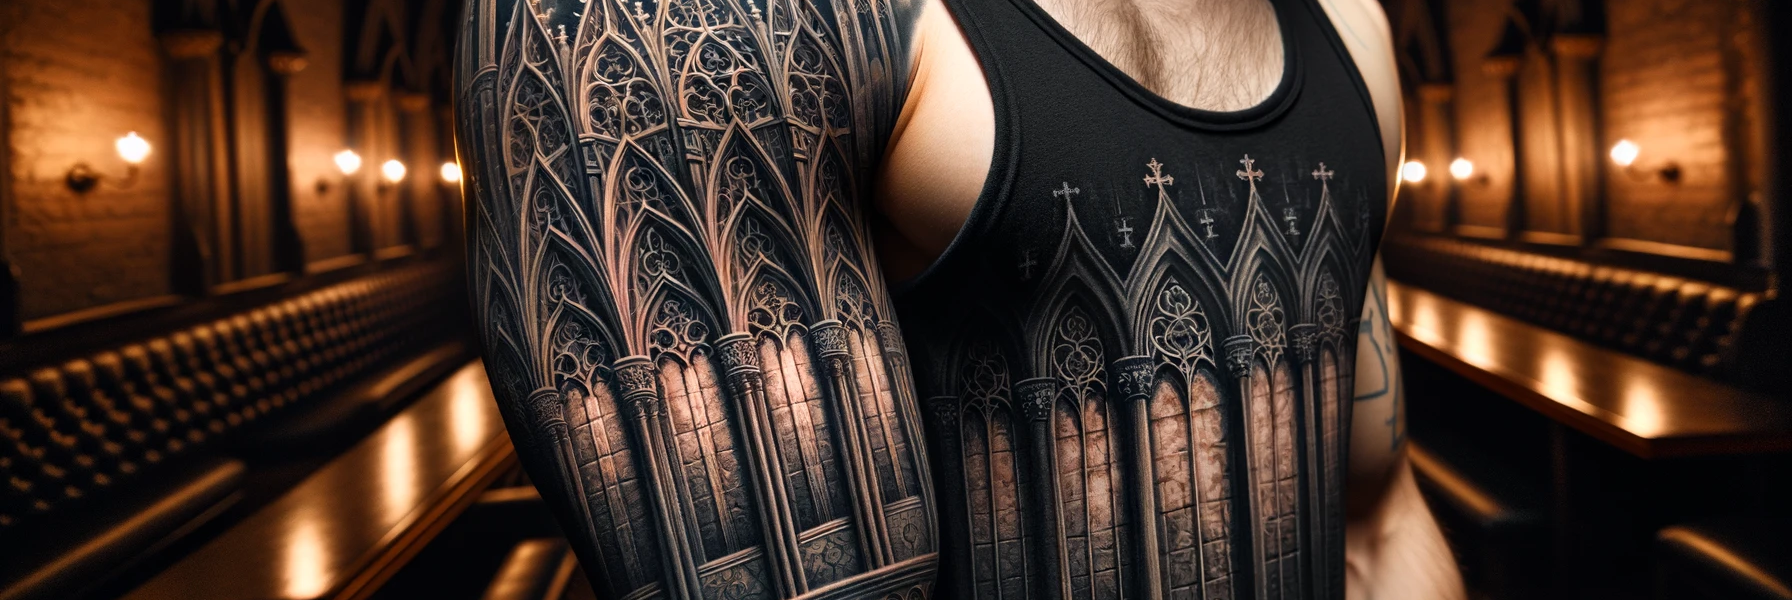 Tatuaż wykonany w stylu gotyckim na całej długości ręki męskiej